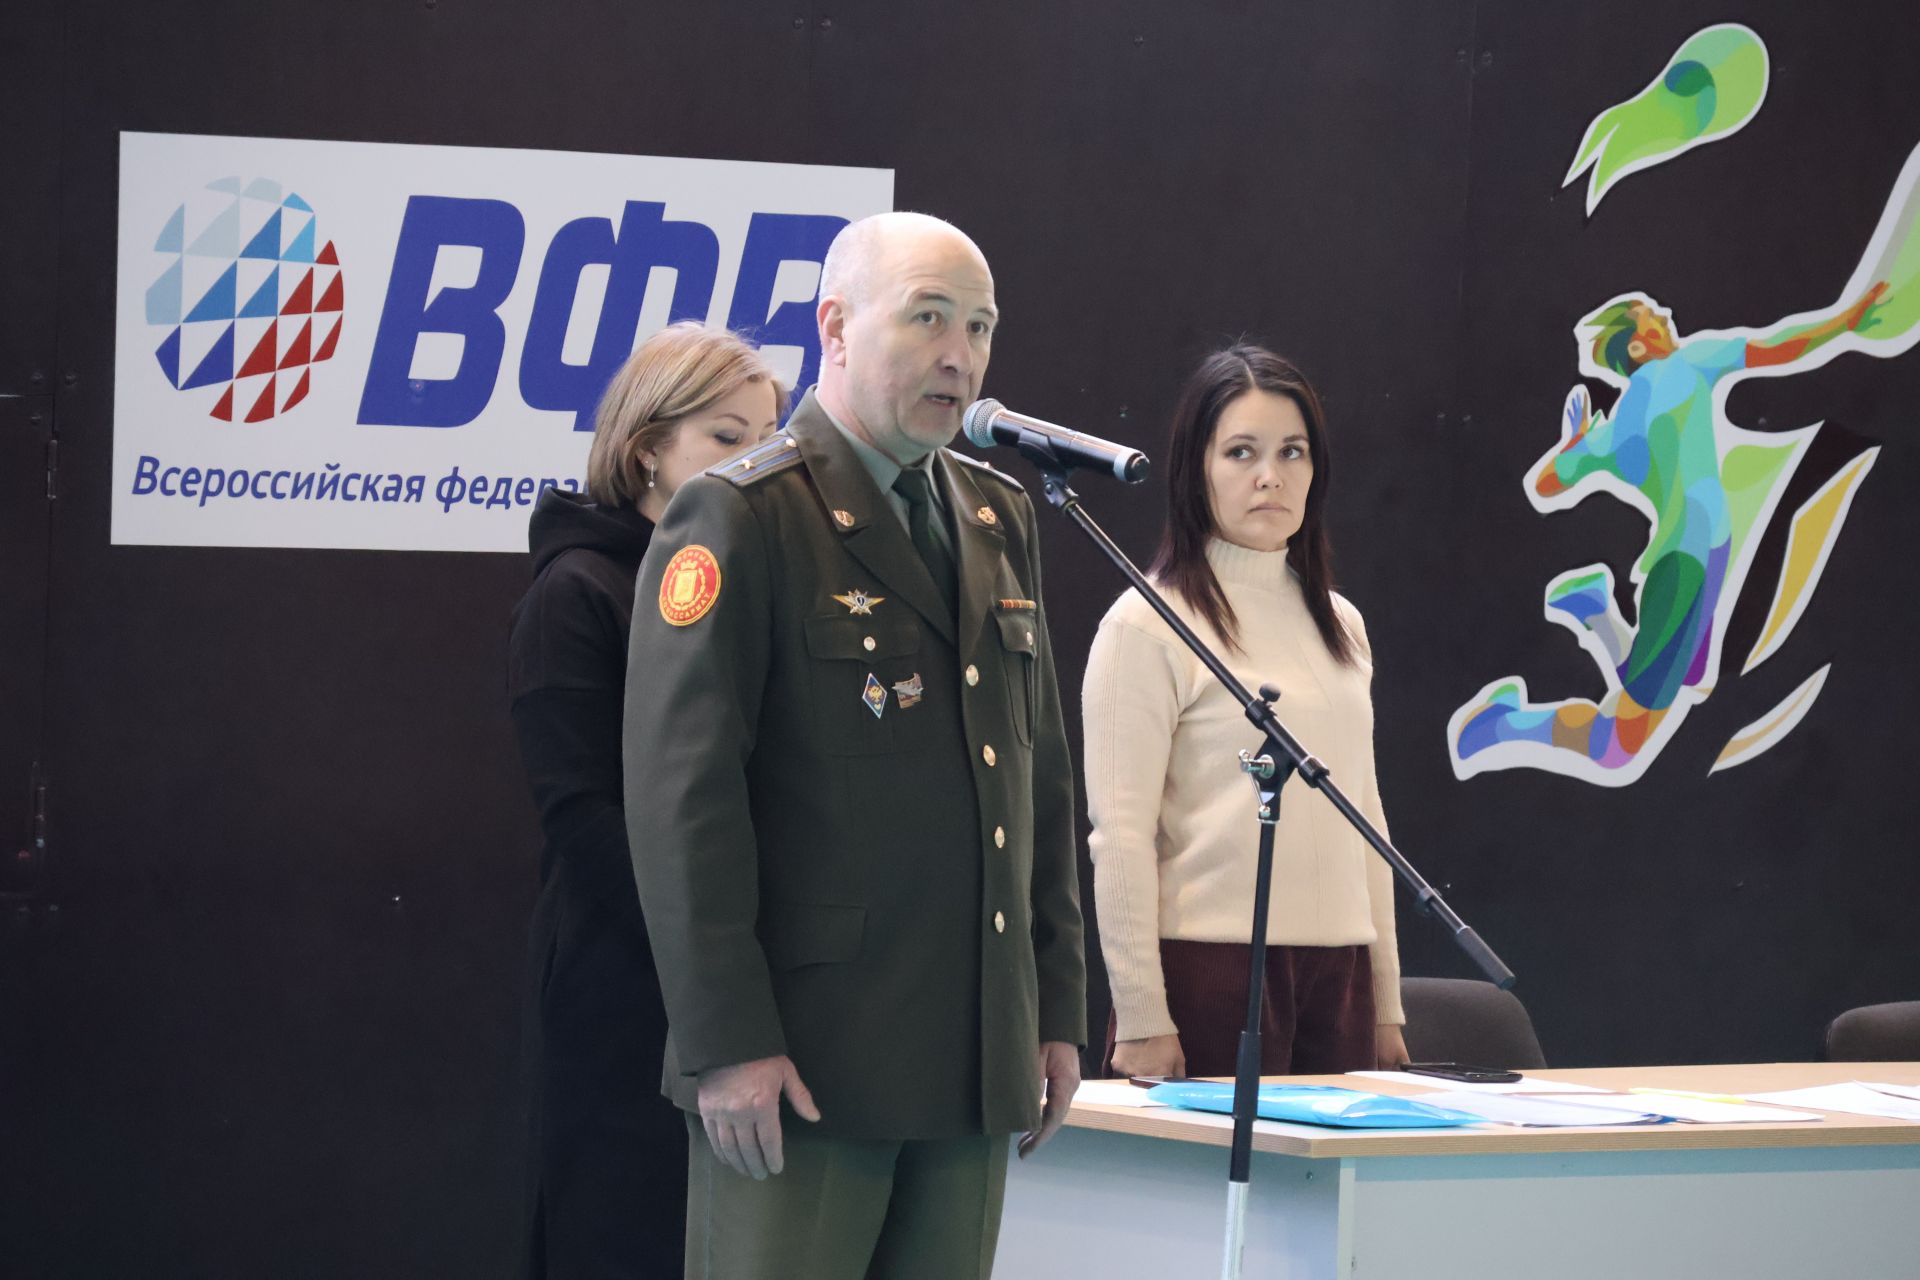 РЕПОРТАЖ: Булачак солдатлар Актаныш районы хәрби комиссарының кубогына ярышалар(+шәп фотолар)